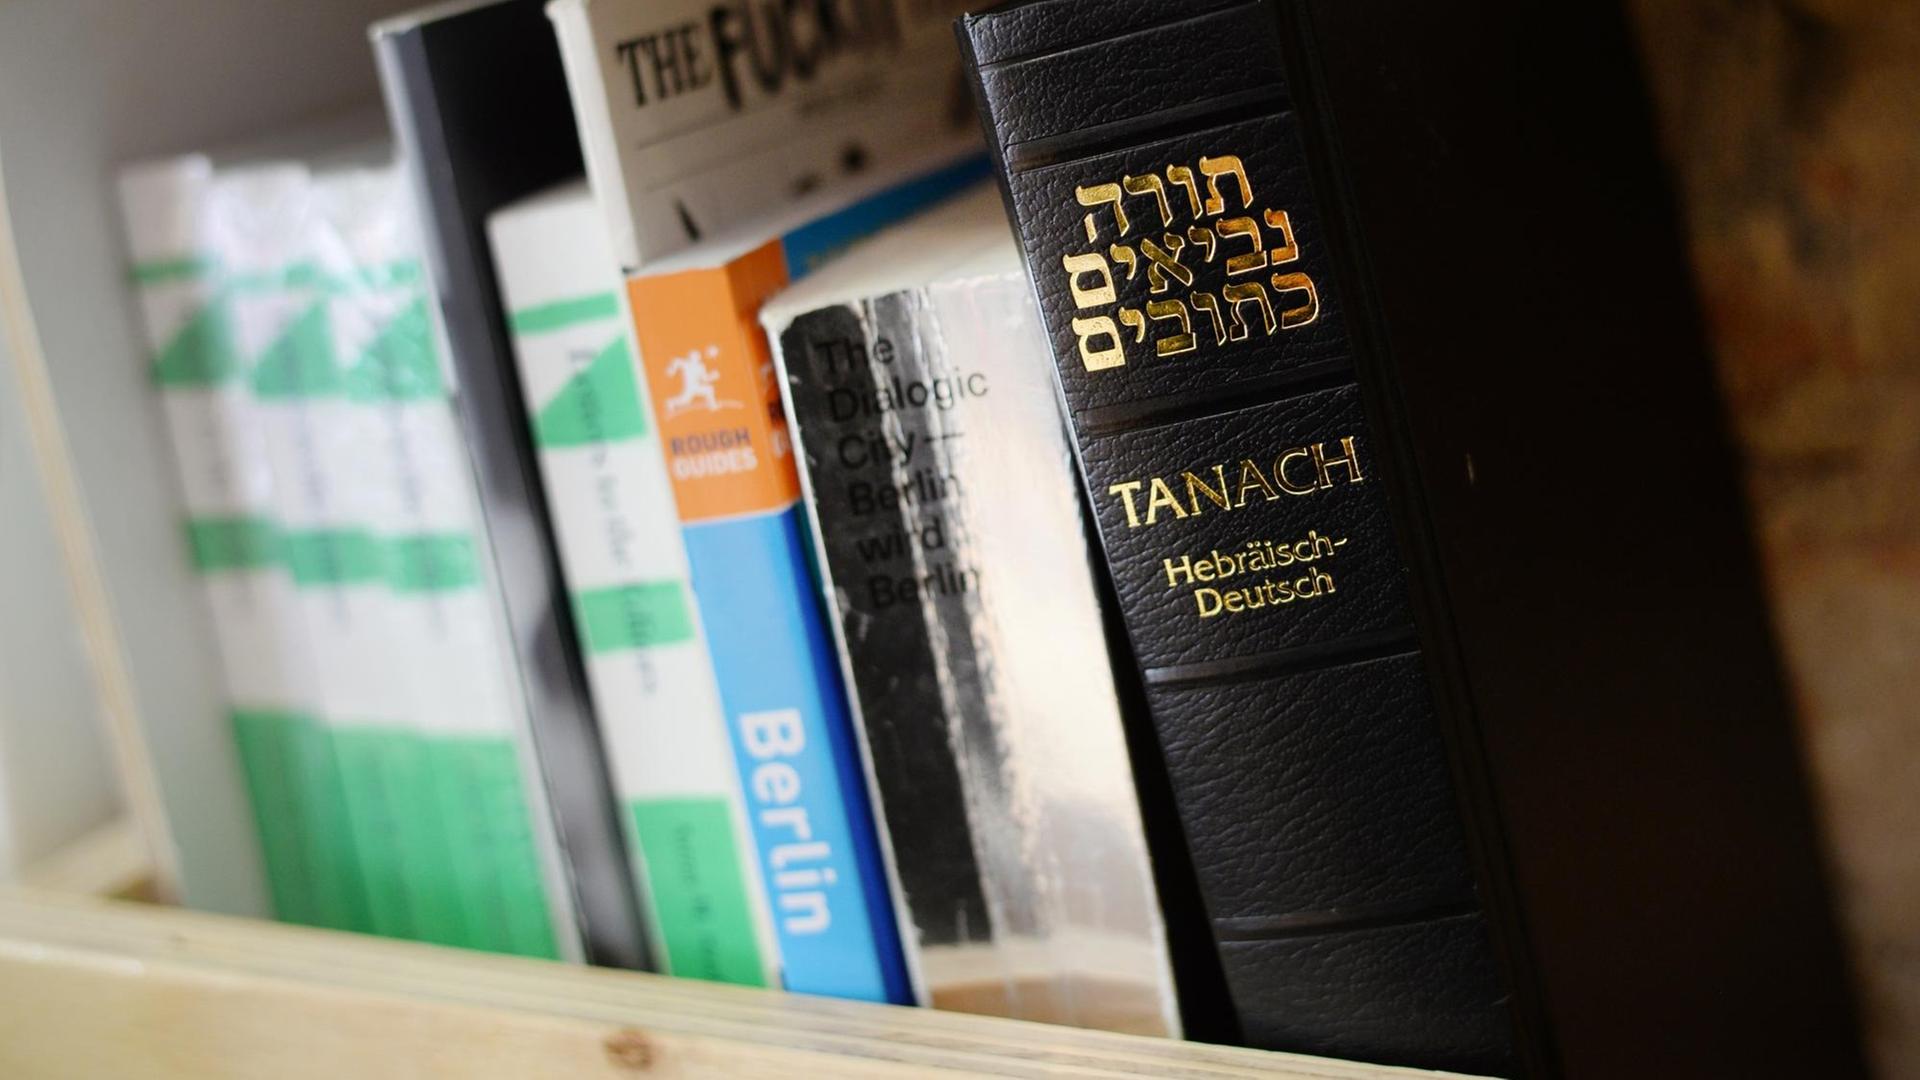 Wahlheimat Deutschland: Ein Tanach mit jüdischen Bibeltexten steht neben einem Berlin-Reiseführer und anderen Büchern in einem Bücherregal eines Berliner Cafés.